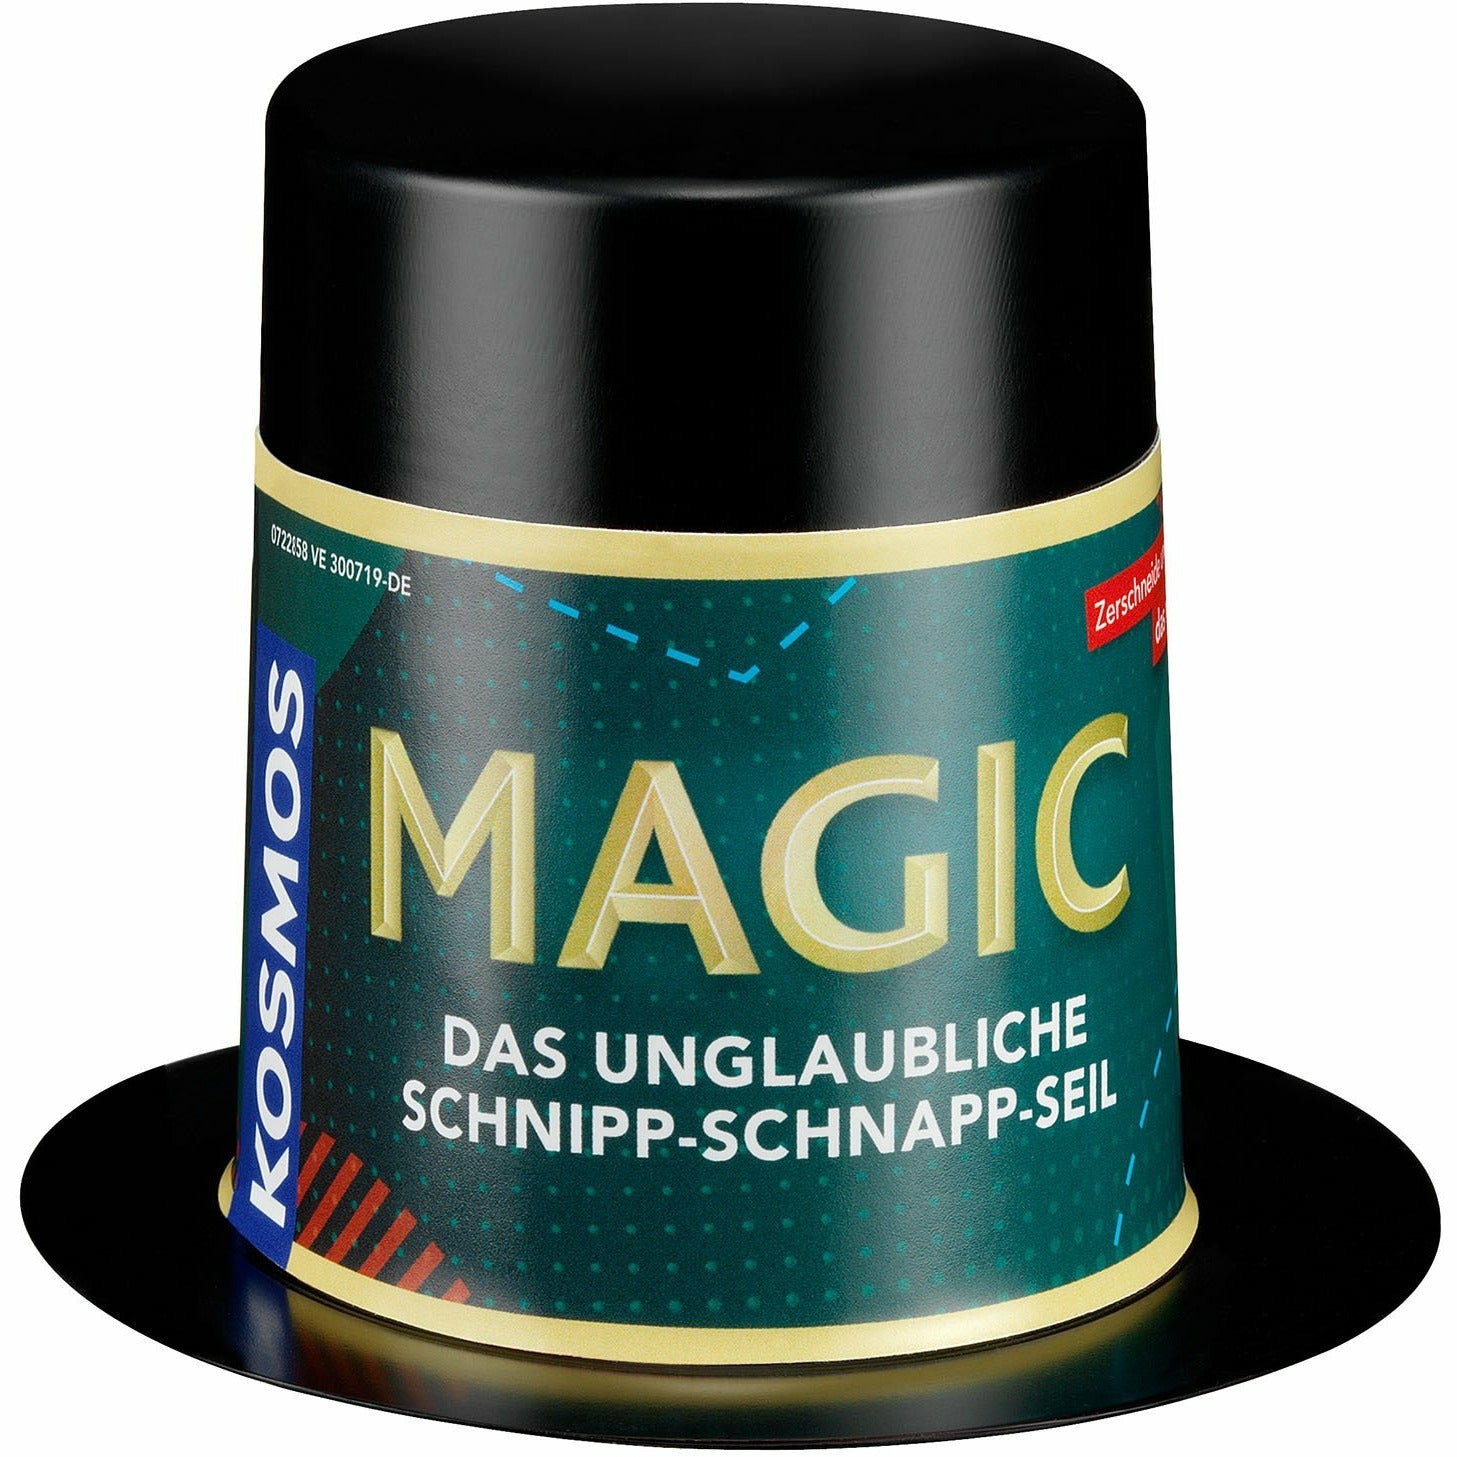 Magic Mini Zauberhut - Das unglaubliche Schnipp-Schnapp-Seil